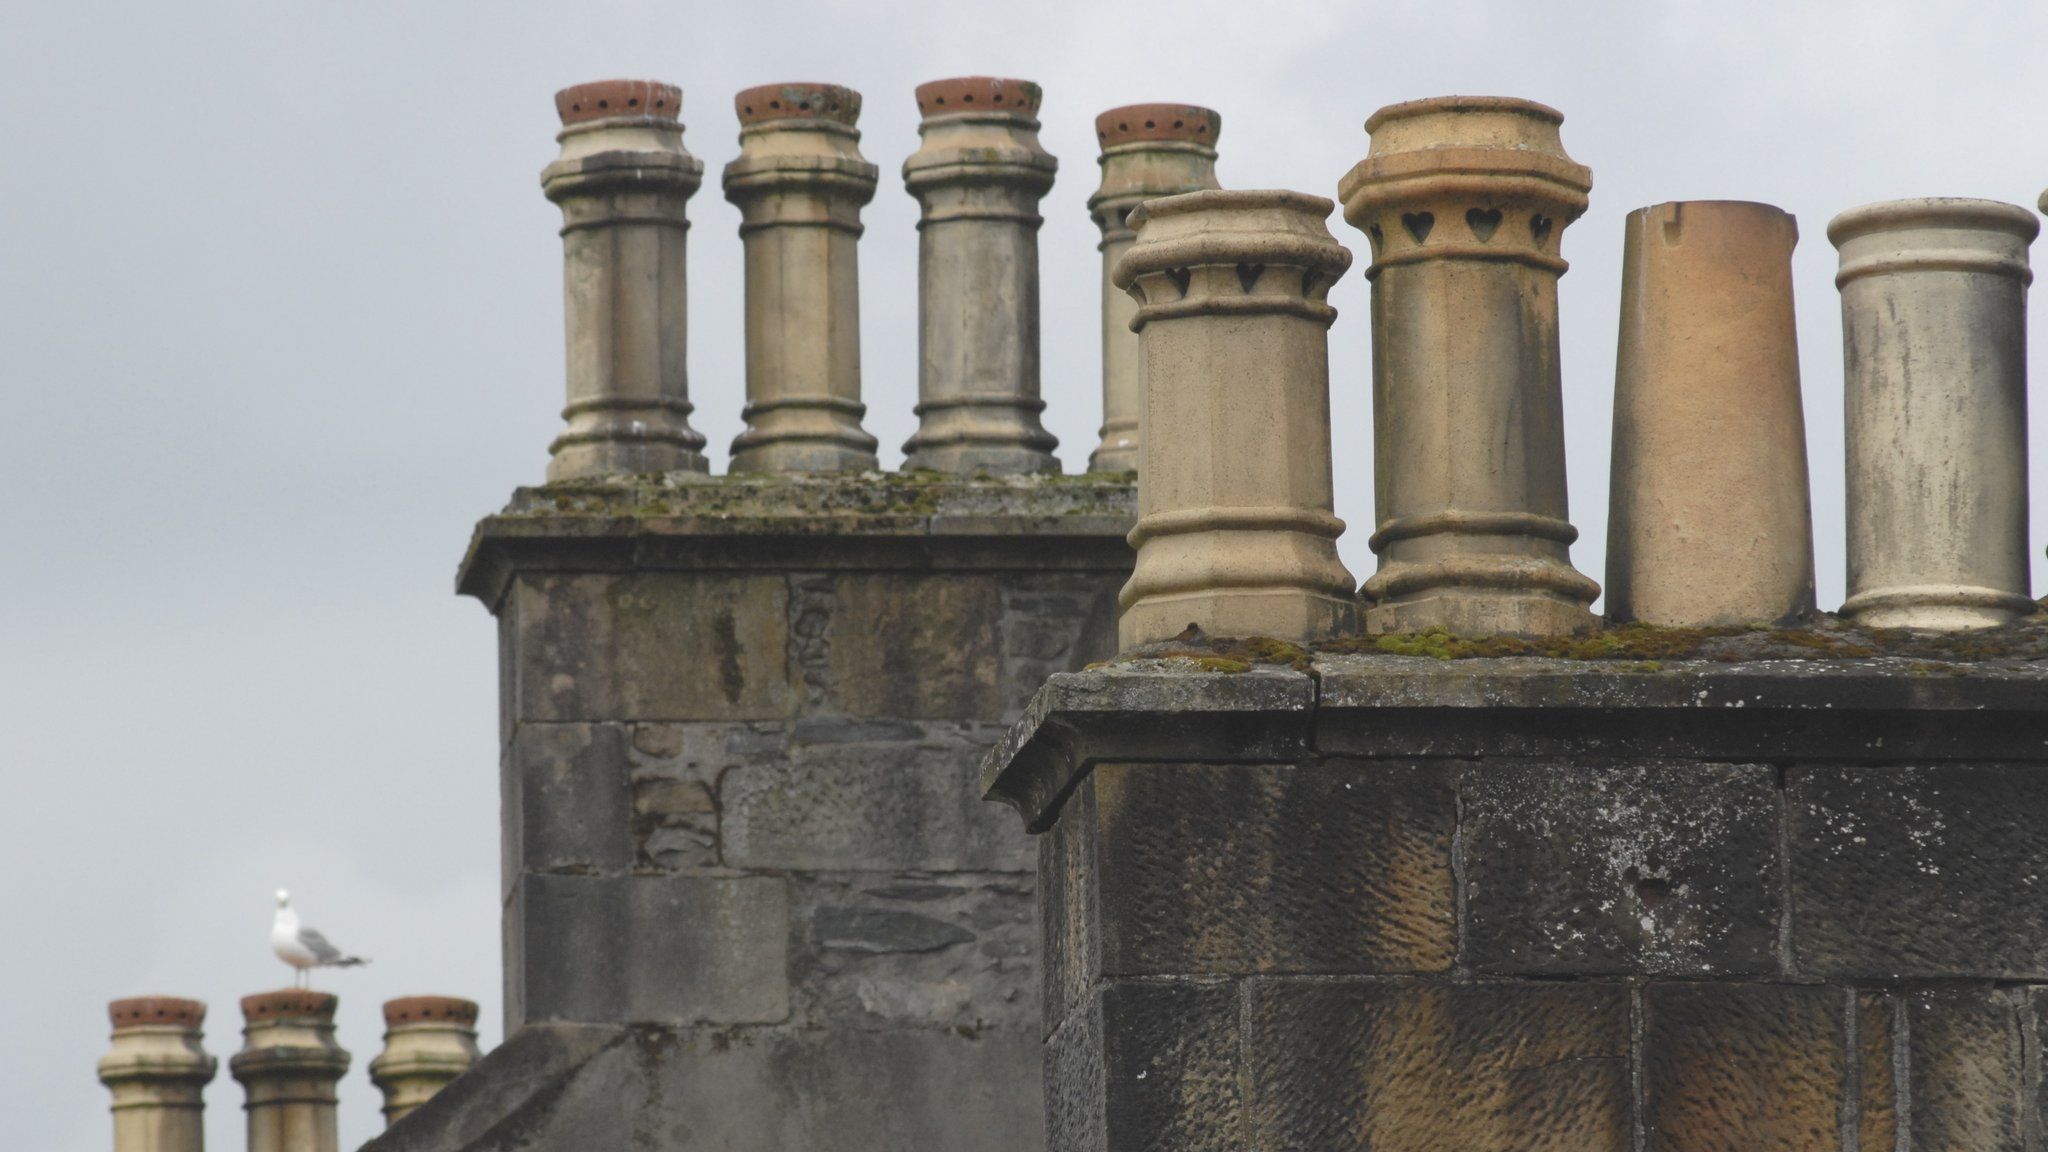 Edinburgh chimney pots